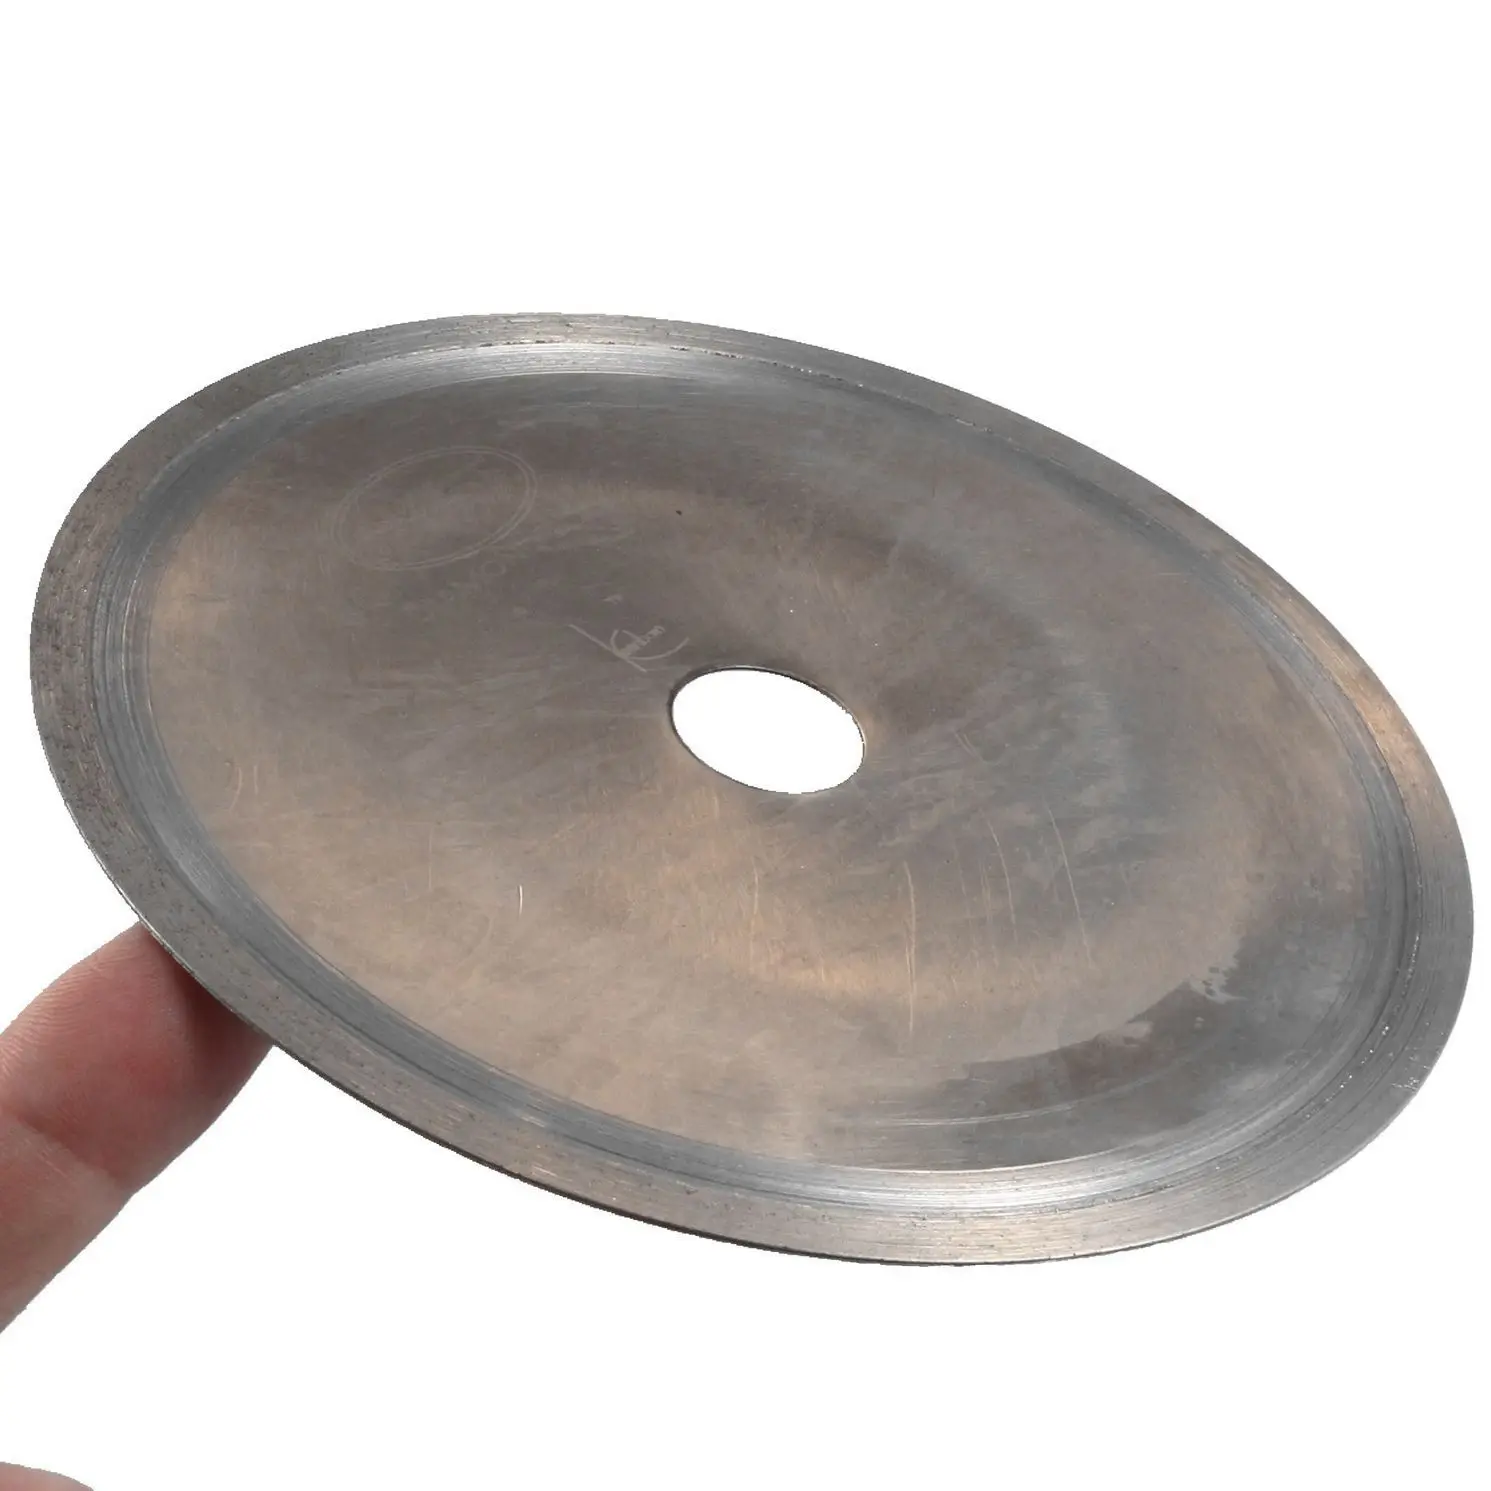 " спеченный Алмазный лапидарный пильный диск для каменной плиты, отделка Арбор 25 мм втулка 5/8" ILOVETOOL